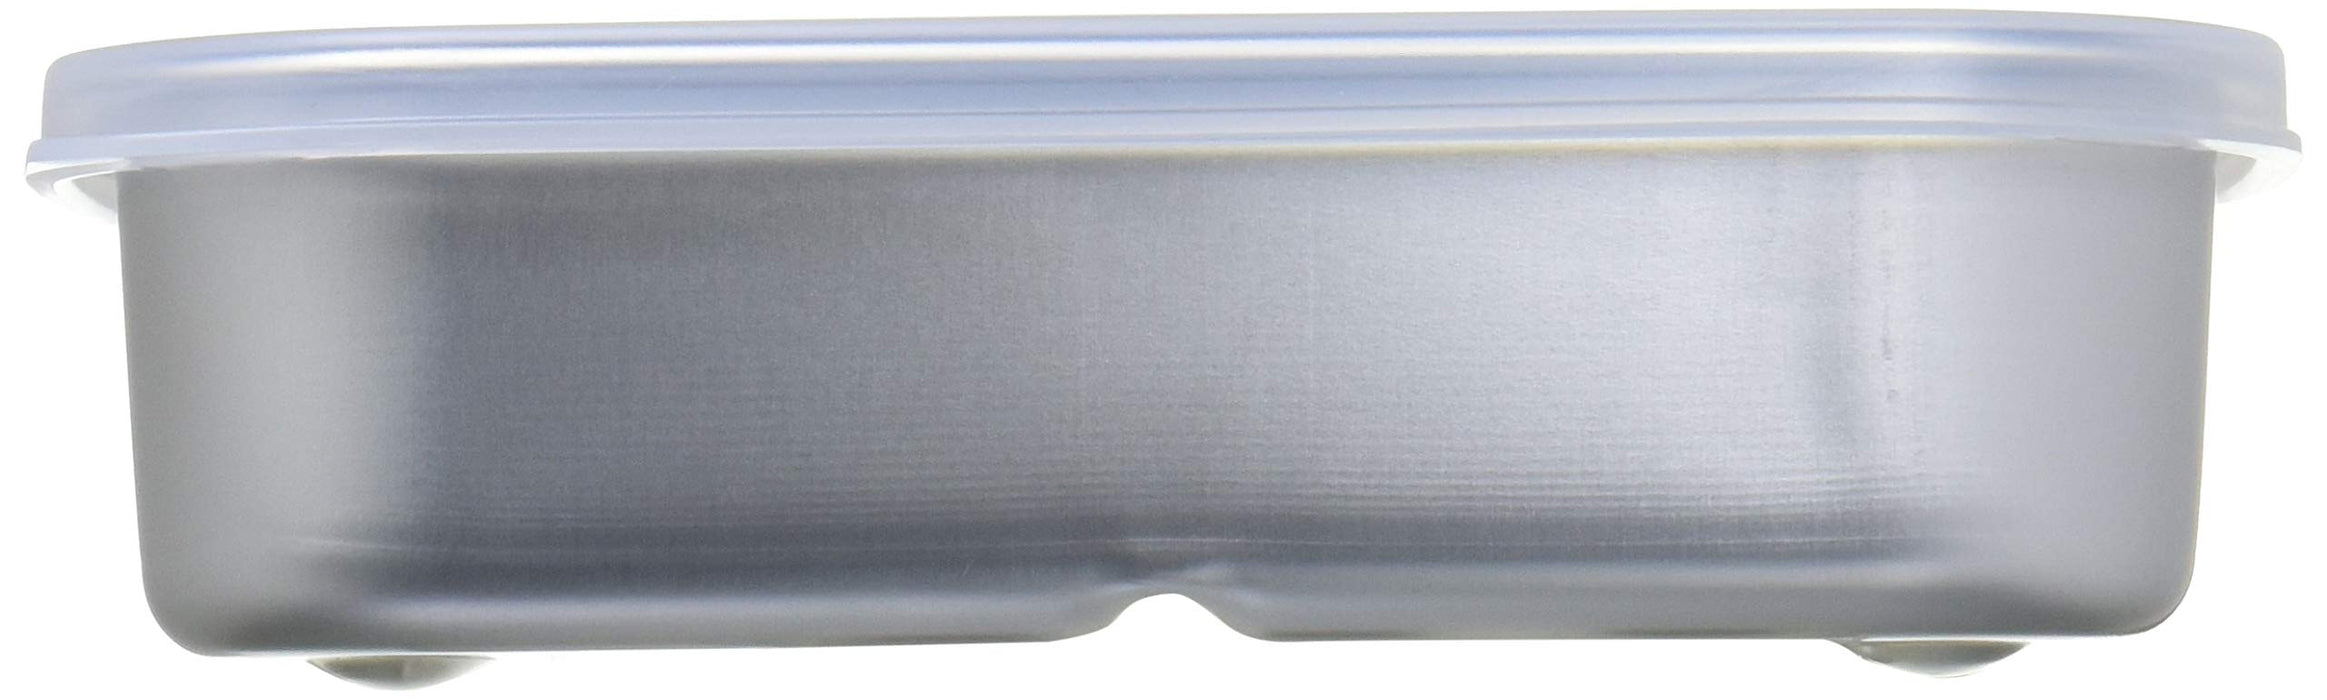 Skater Schnellkühlbehälter aus natürlichem Aluminium, 500 ml – S-Serie Akh2